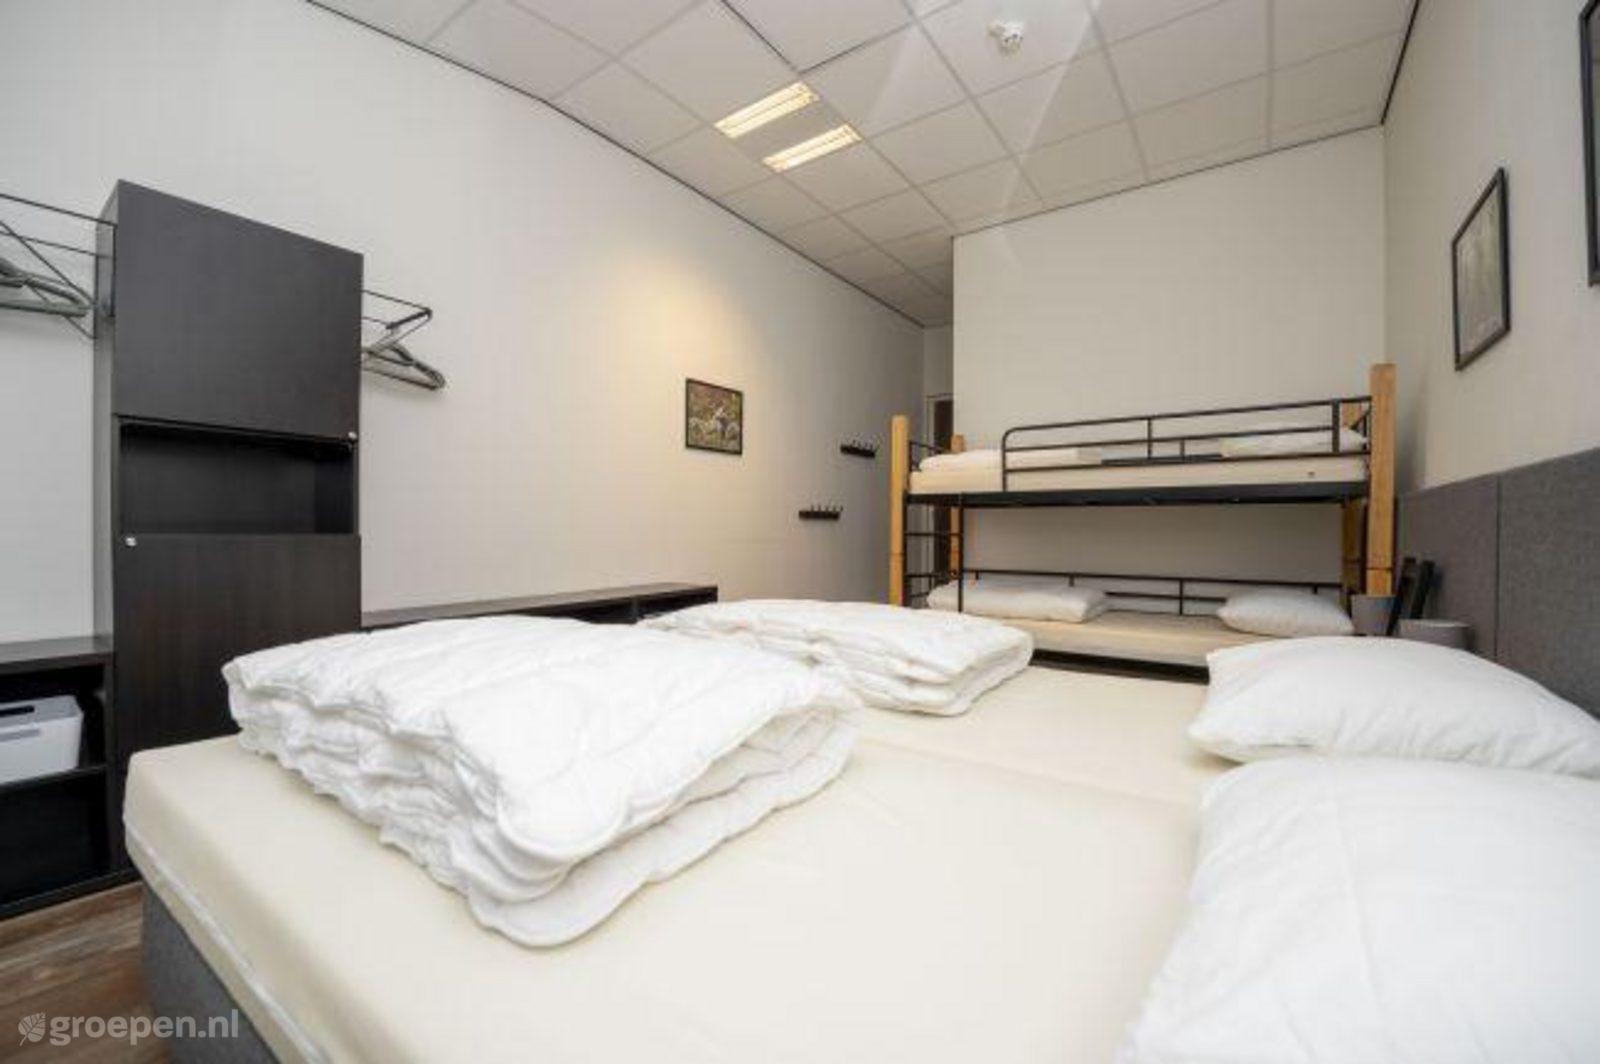 Group accommodation Rijs